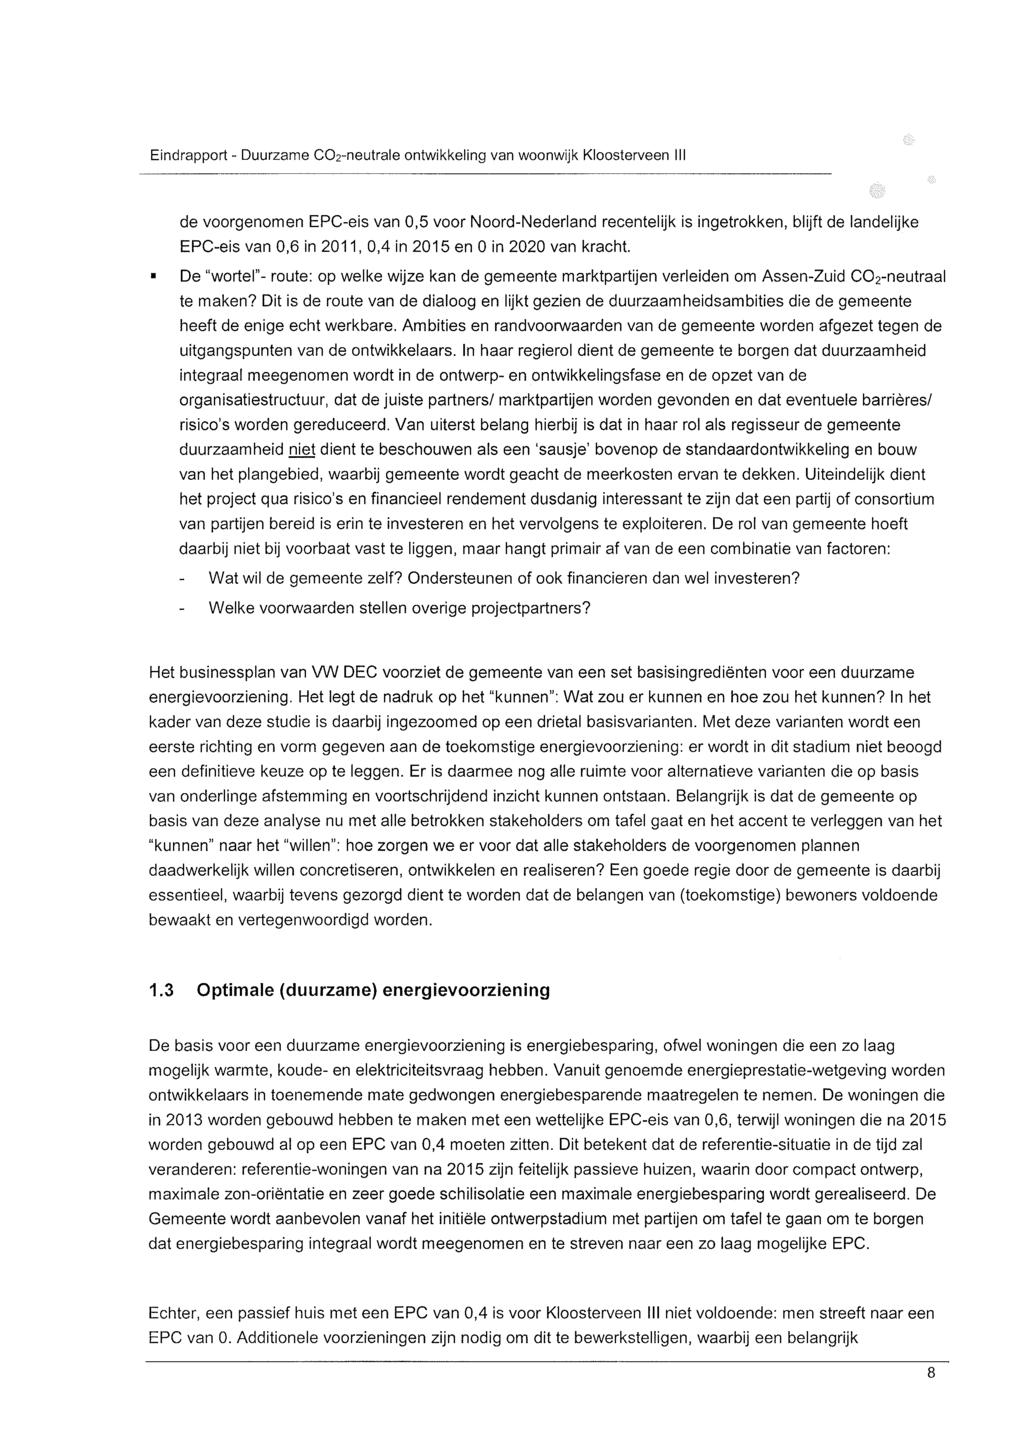 Eindrapport - Duurzame C02-neutrale ontwikkeling van woonwijk Kloosterveen III de voorgenomen EPC-eis van 0,5 voor Noord-Nederland recentelijk is ingetrokken, blijft de landelijke EPC-eis van 0,6 in